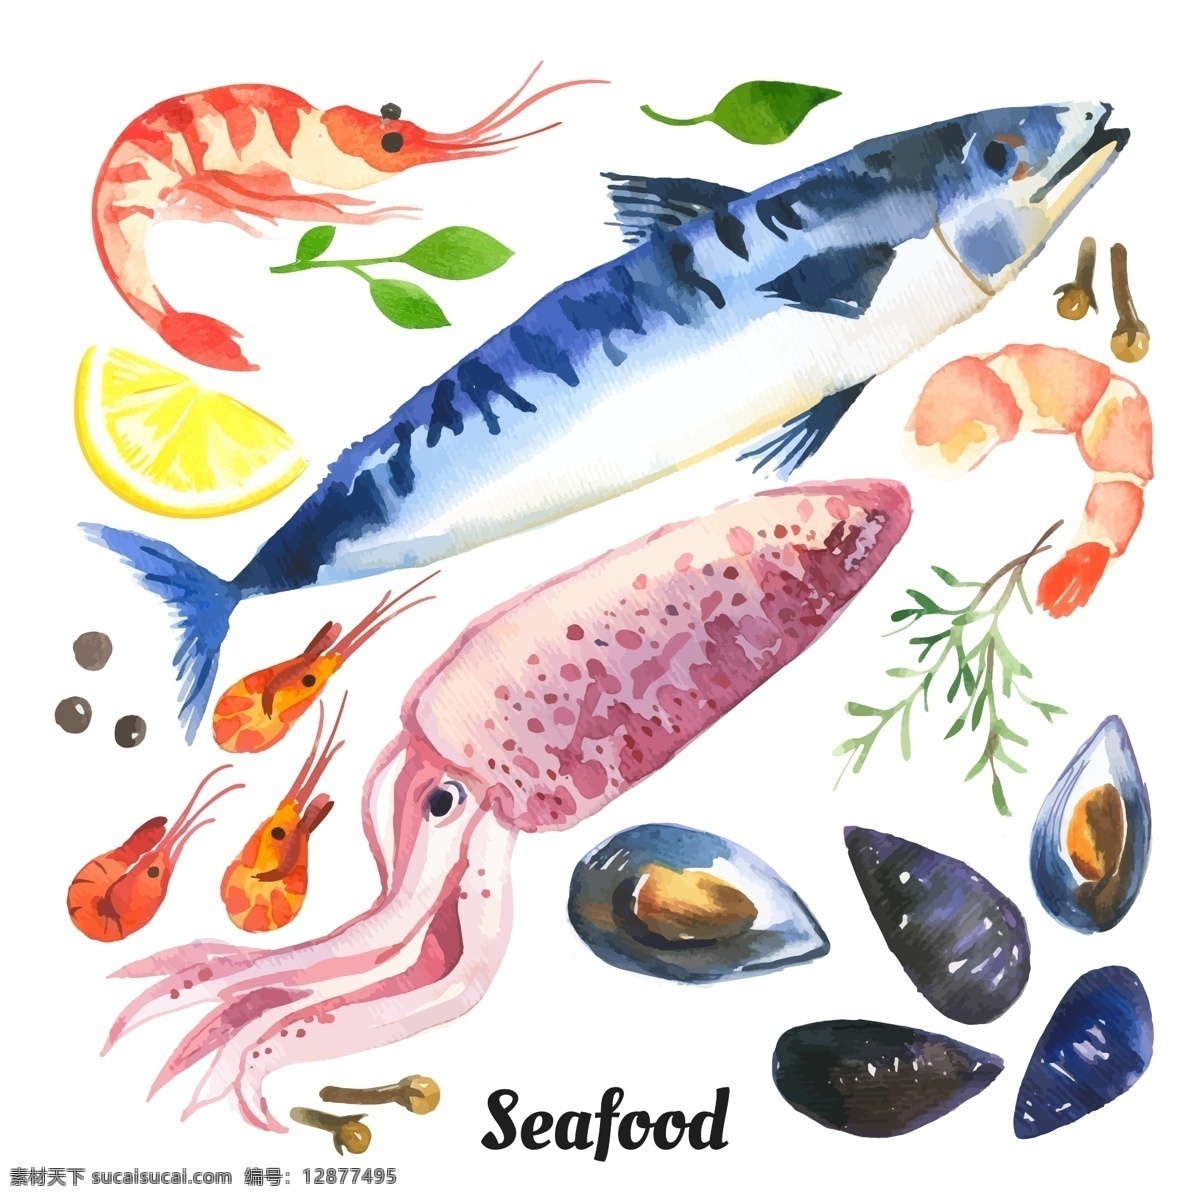 水彩 绘 海鲜 食 材 插画 龙虾 扇贝 食材 手绘 水彩绘 鱿鱼 鱼类